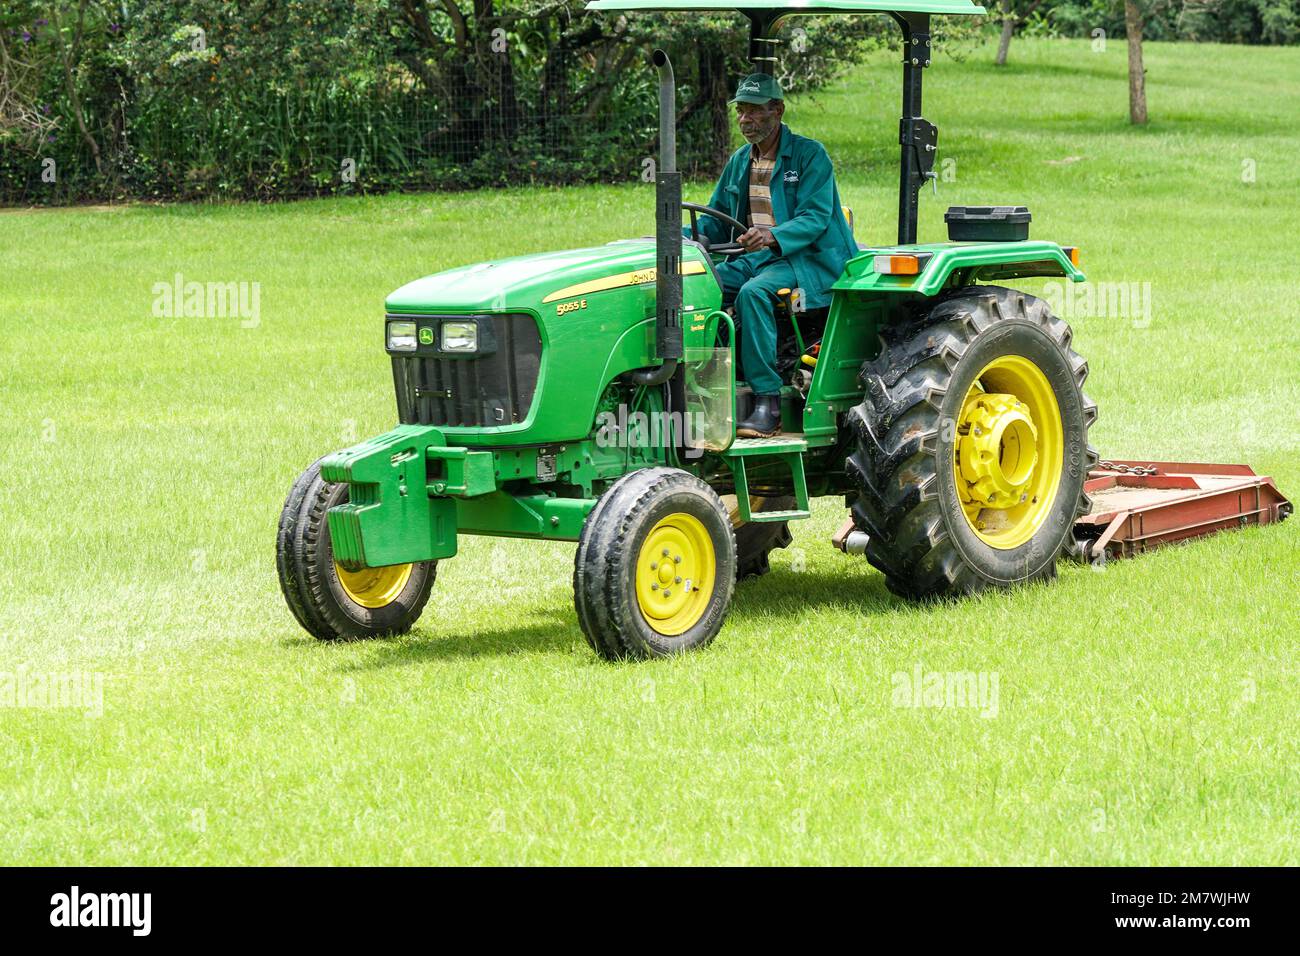 Afrikanischer Arbeiter oder Mitarbeiter, der in Südafrika auf einem gelben und grünen John Deere-Traktor einen weitläufigen Rasen mäht Stockfoto